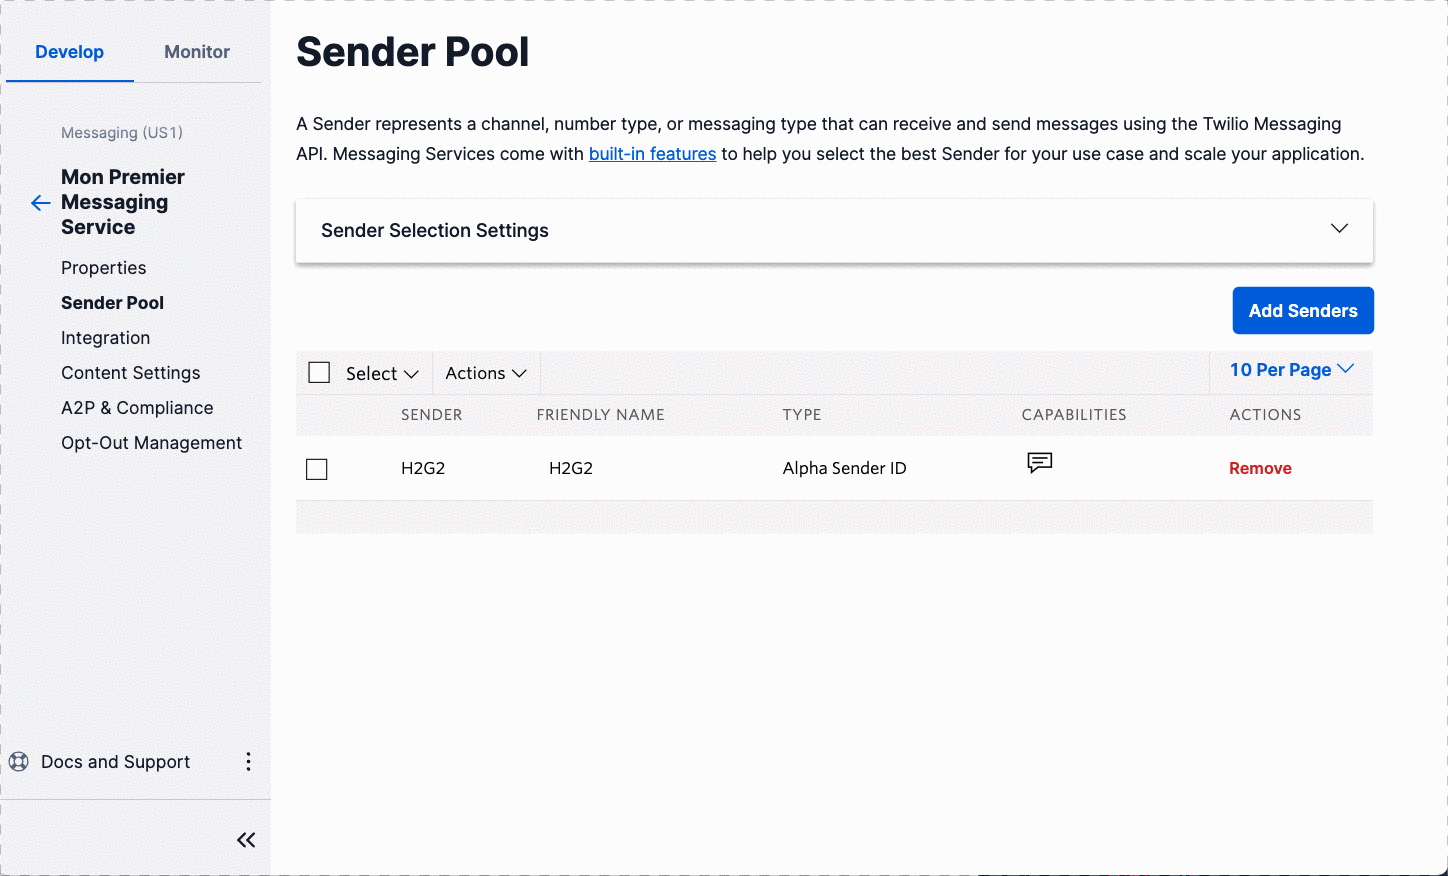 Manage Sender Pool